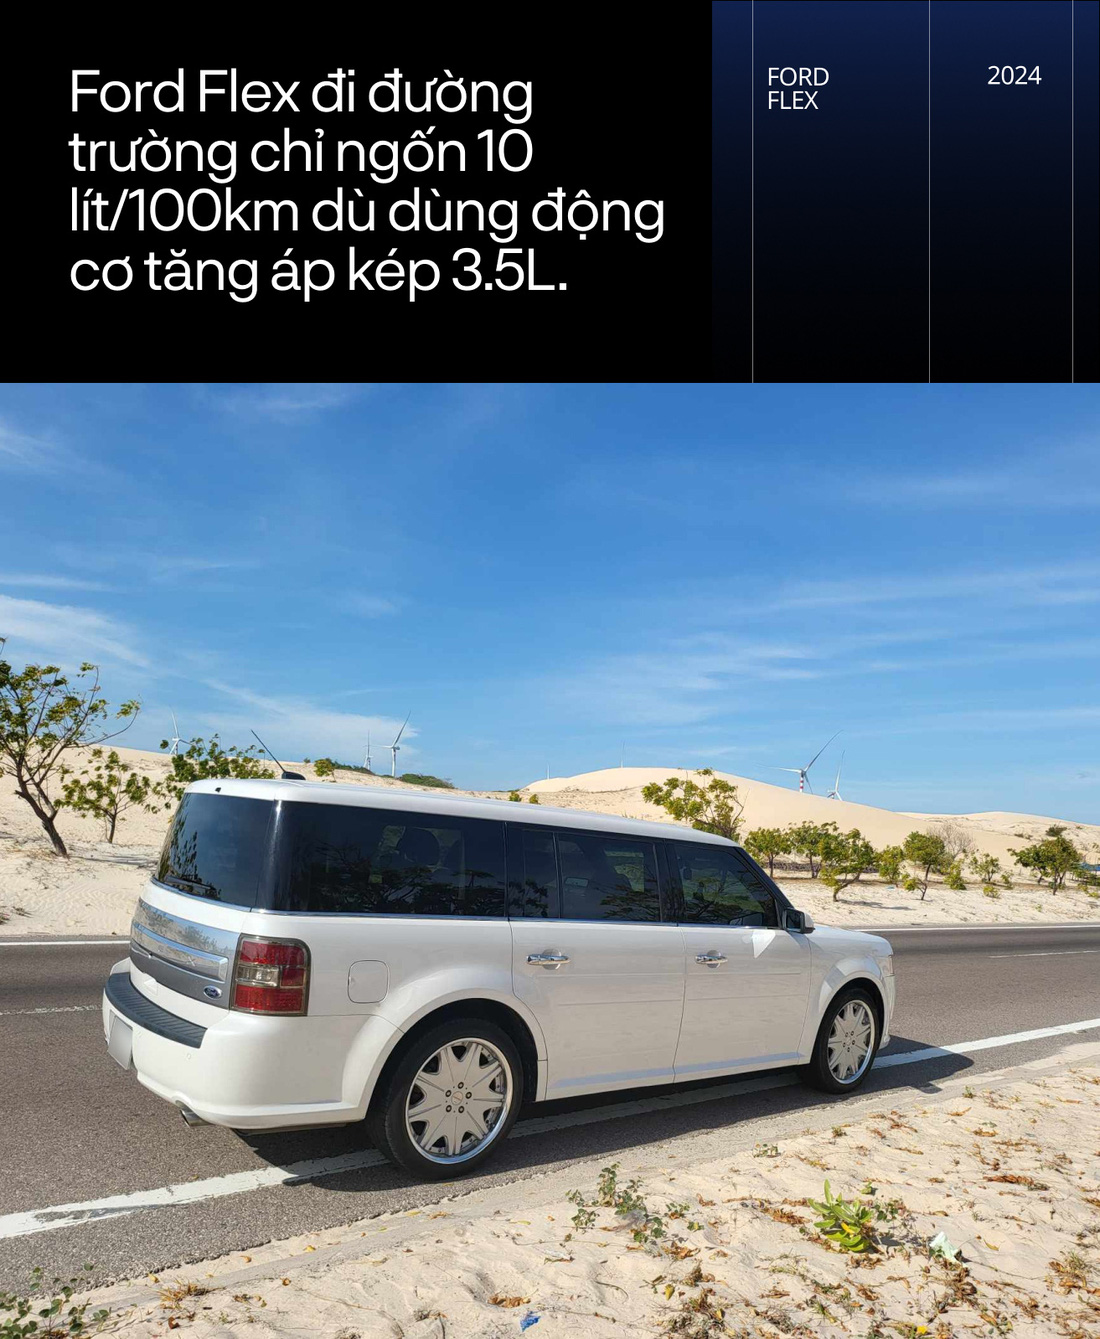 Chủ xe Ford Flex hàng hiếm tại Việt Nam: 'Đáng chơi như Explorer bản độc'- Ảnh 3.